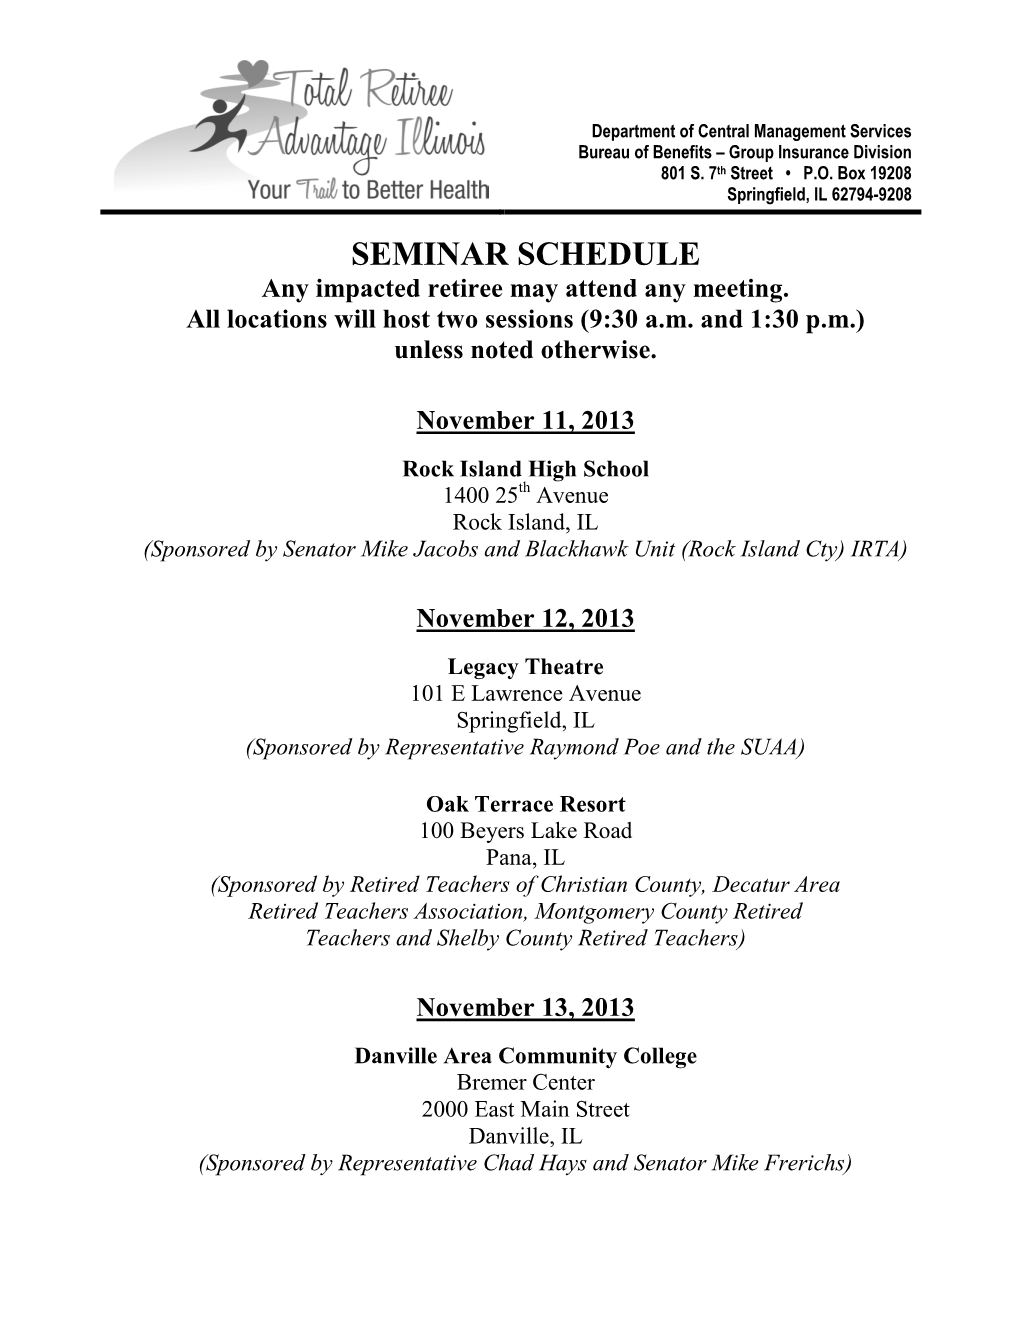 TRAIL Seminar Schedule